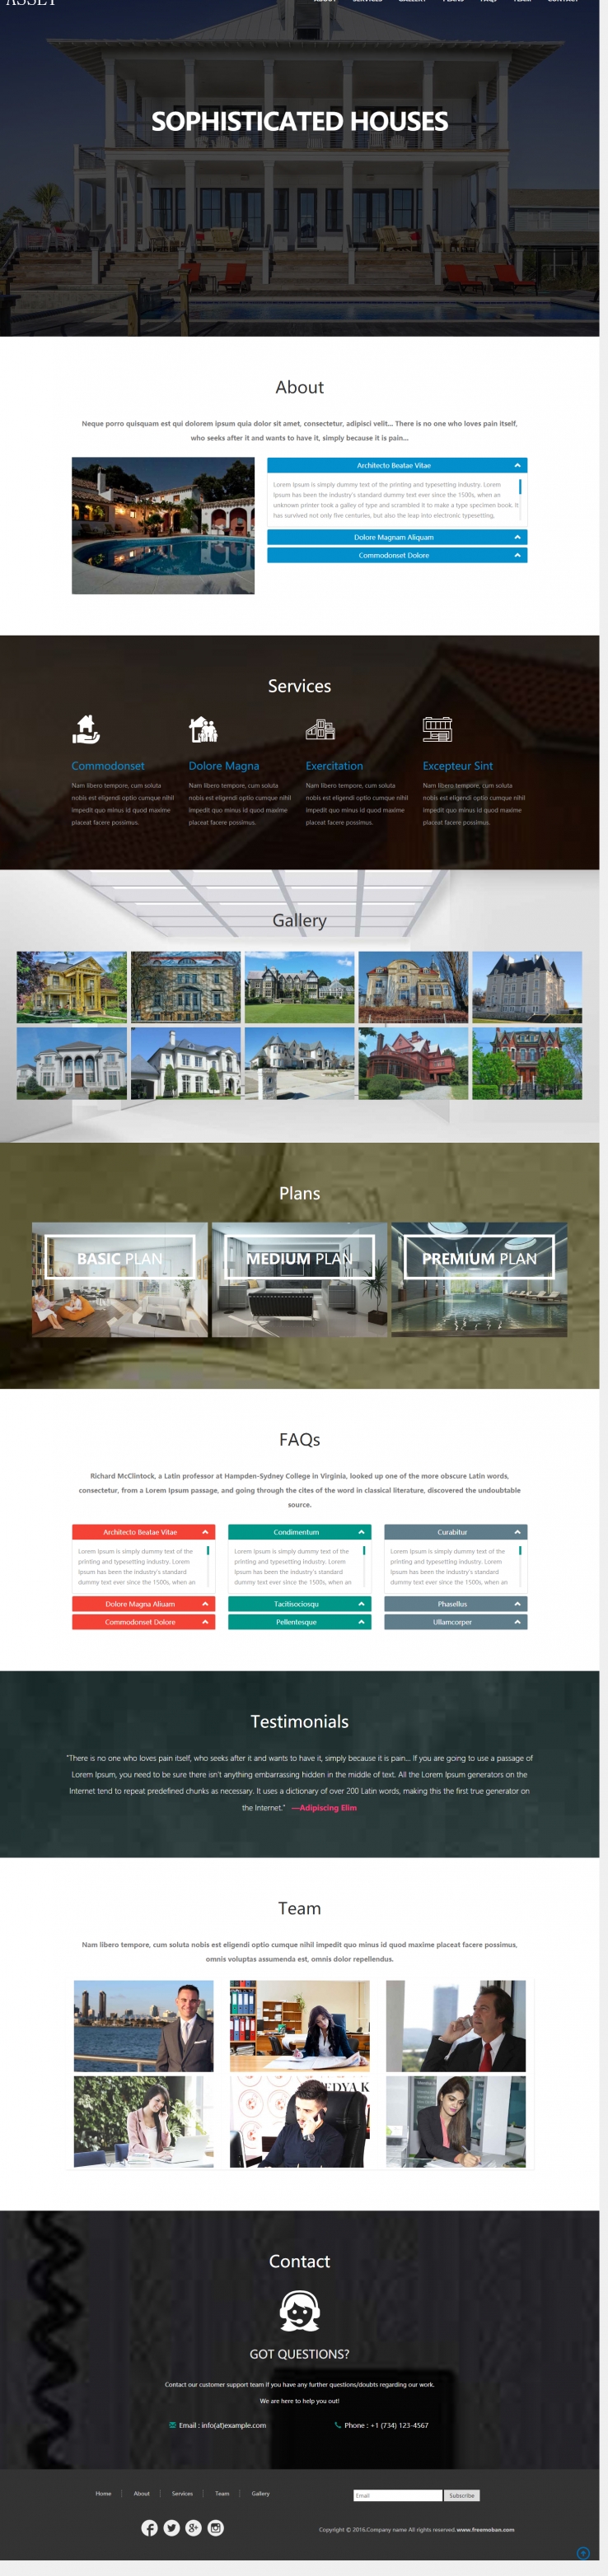 黑色大气风格的欧美别墅建筑设计企业网站模板下载